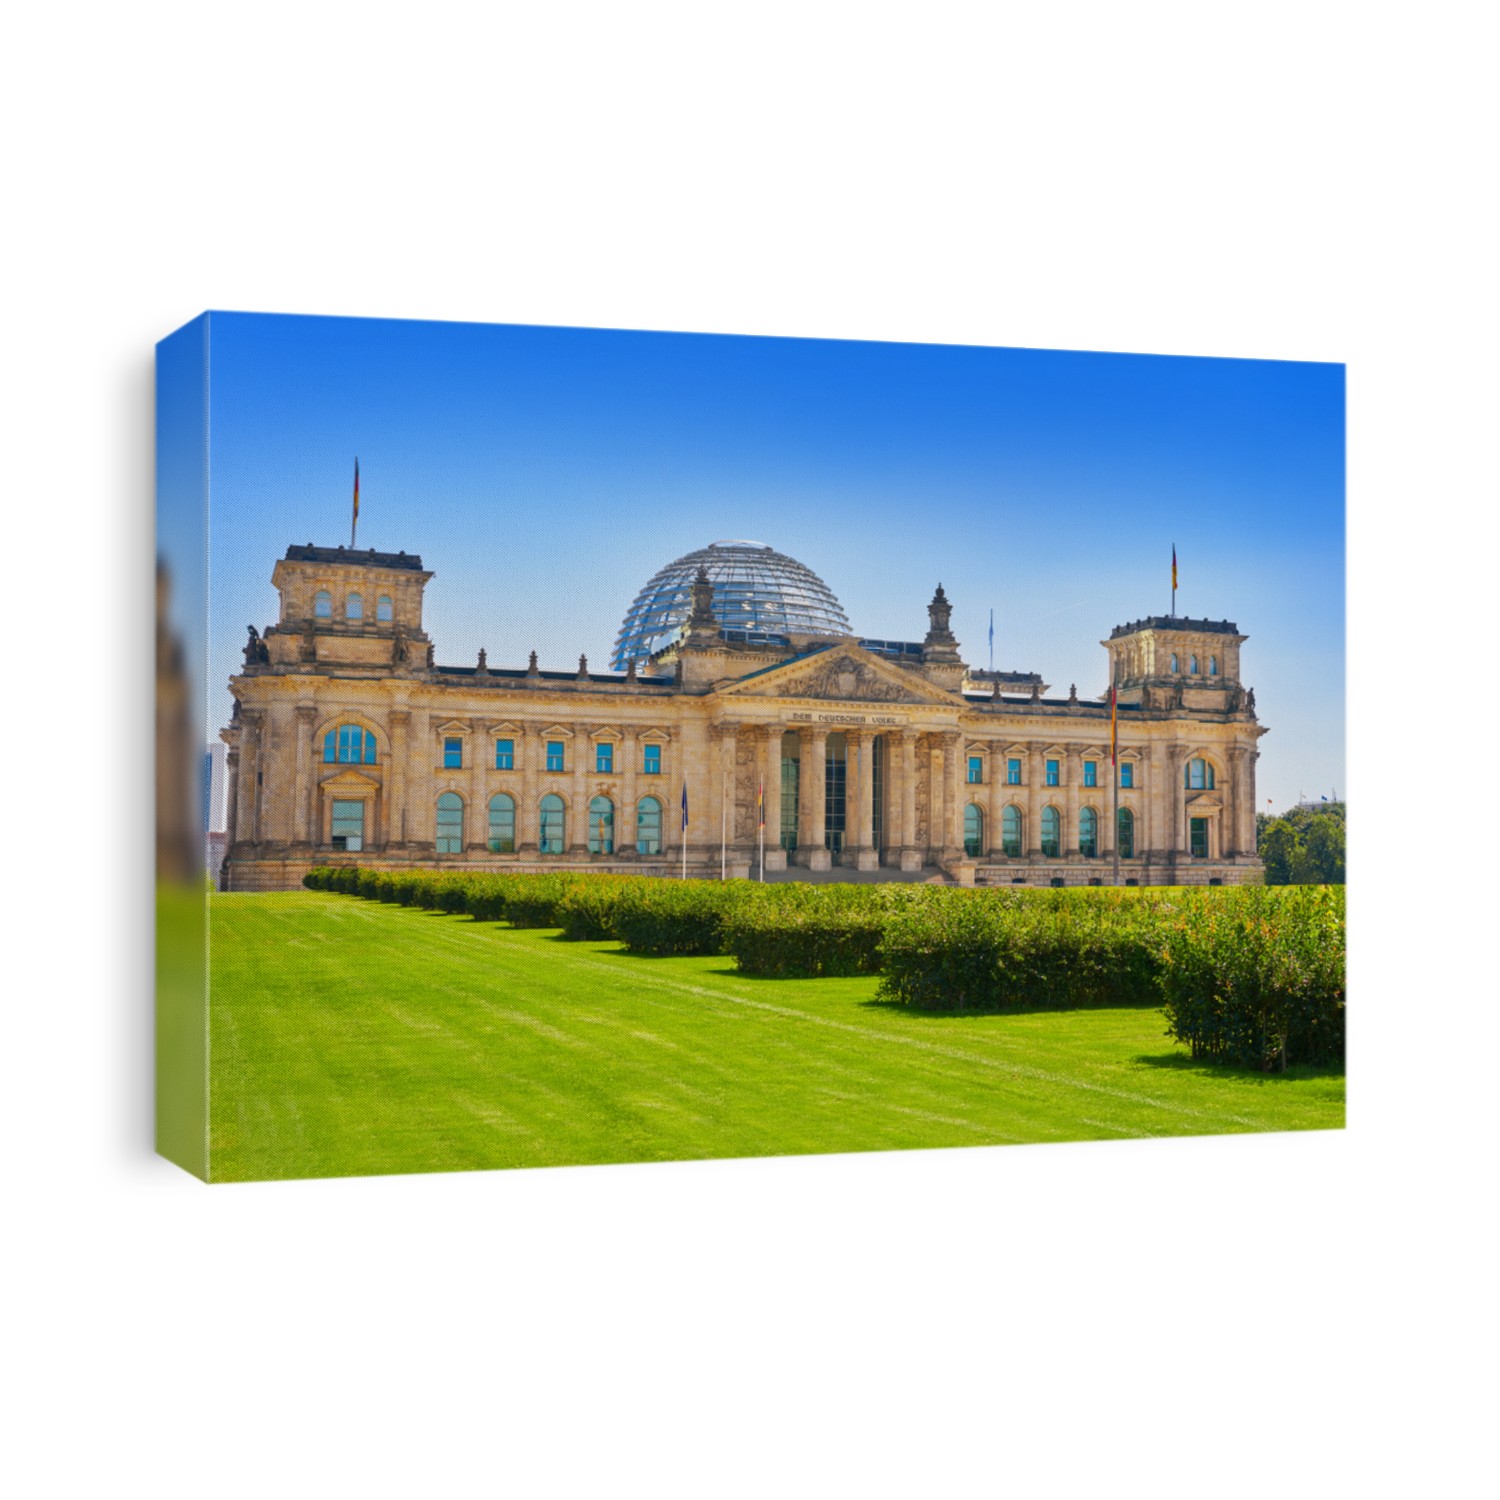 The Reichstag Berlin building Deutscher Bundestag in Germany